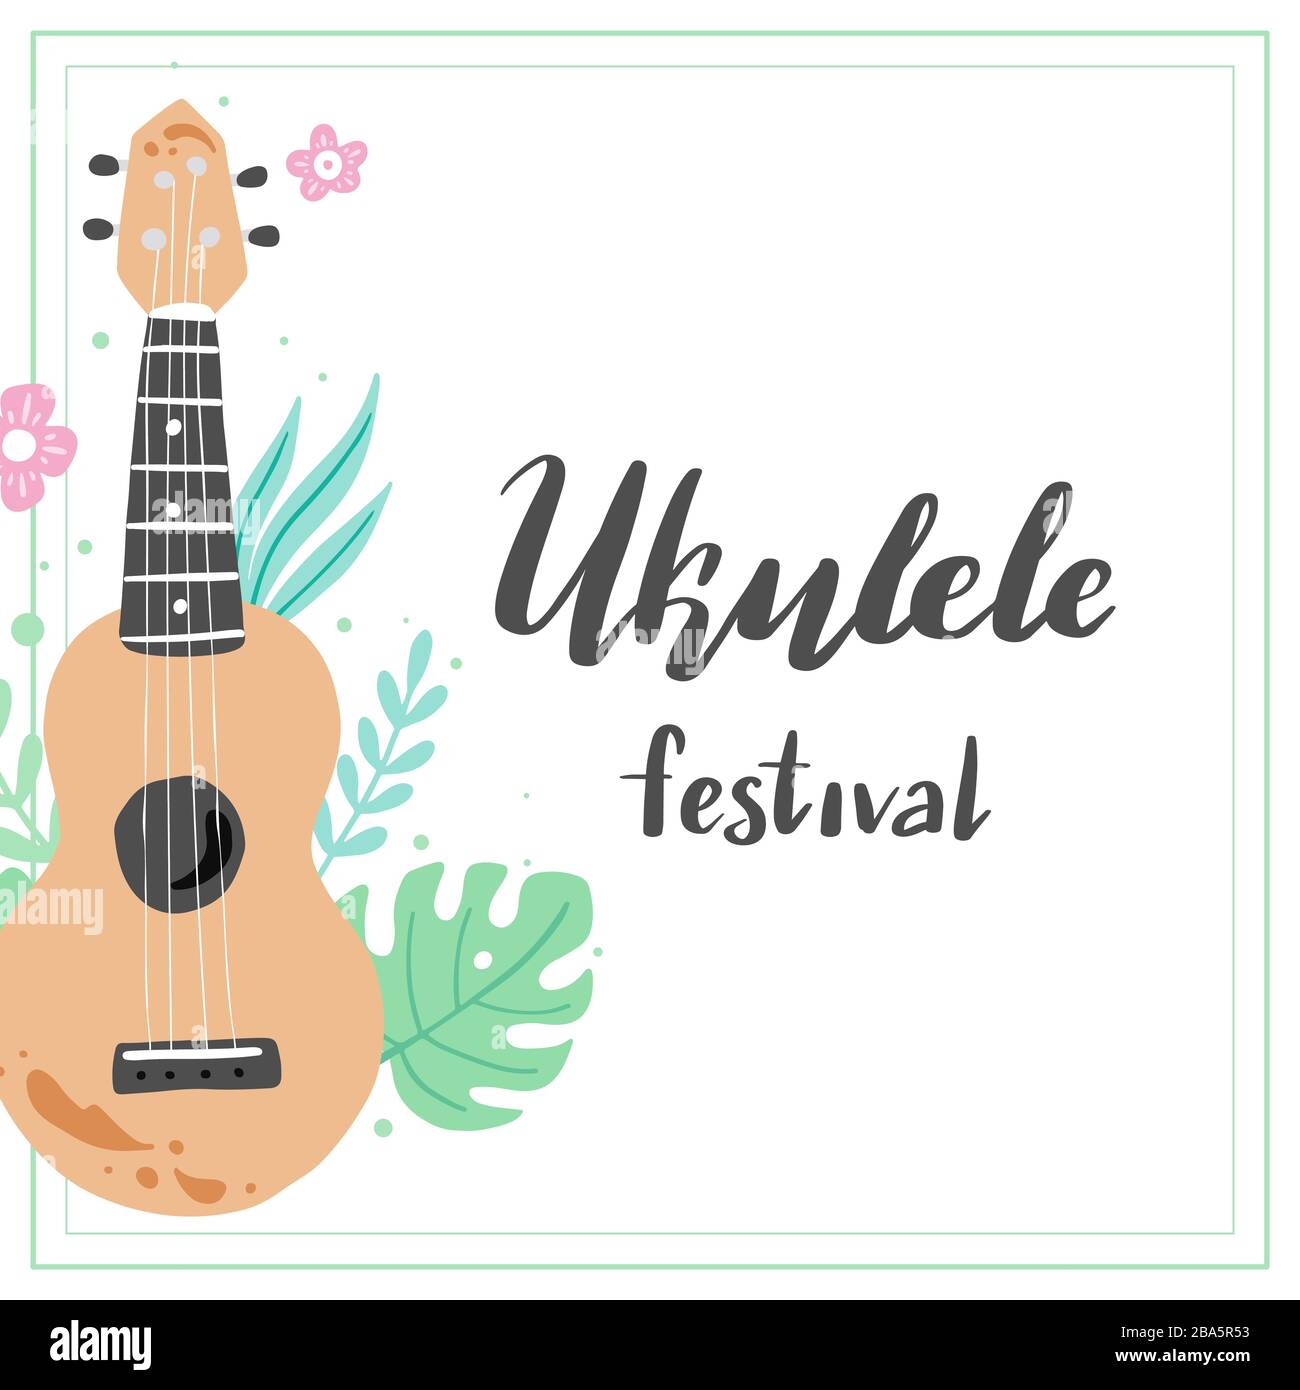 Cartoon ukulele con testo in lettere per l'estate, musica poster modello design. Piccola chitarra con foglia tropicale, decorazione floreale in stile hawaii. Illusazione vettoriale dello stile disegnato a mano. Illustrazione Vettoriale